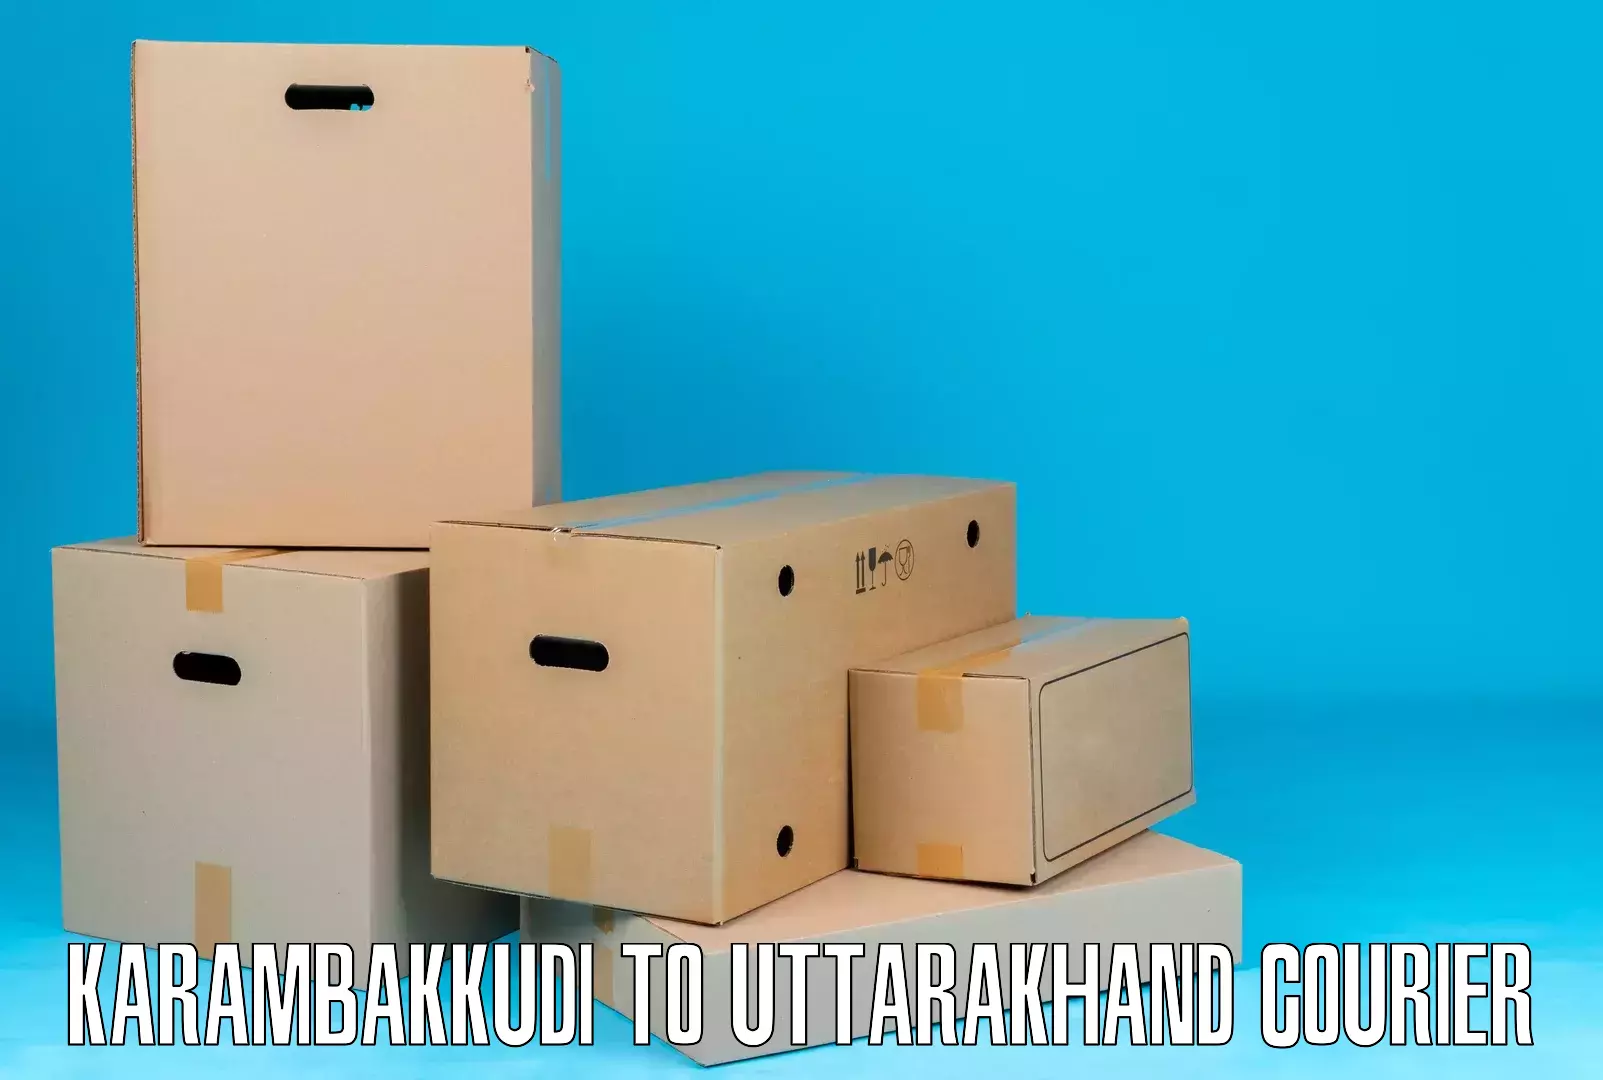 Urgent courier needs Karambakkudi to Kotdwara